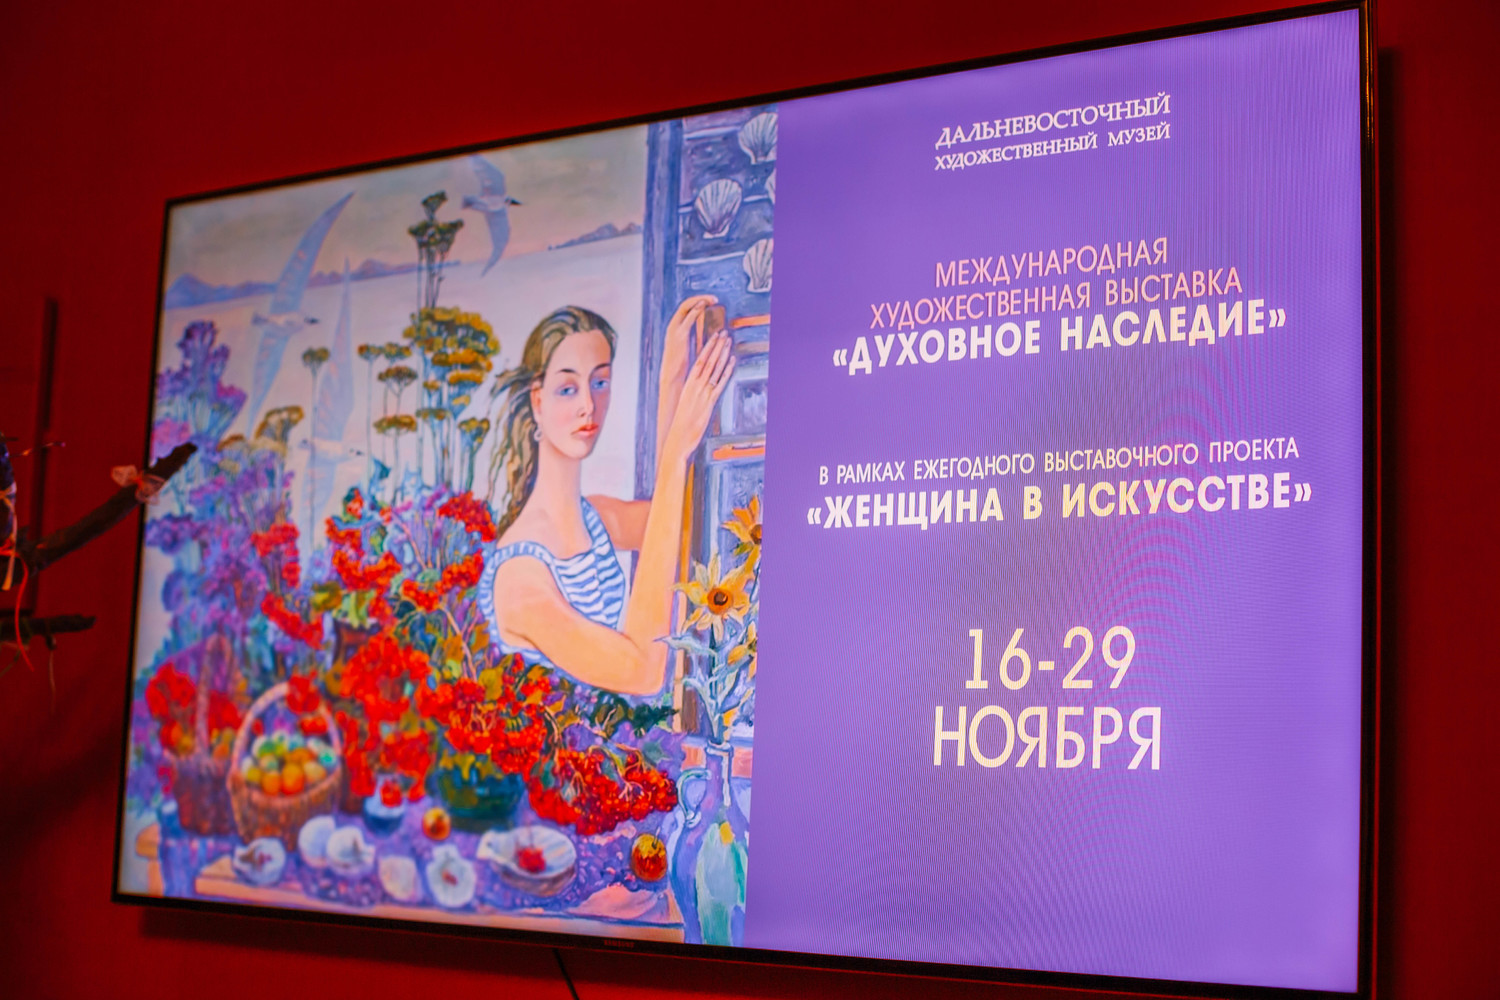 Выставка «Женщина в искусстве» о духовном наследии народов открылась в Хабаровске: фото